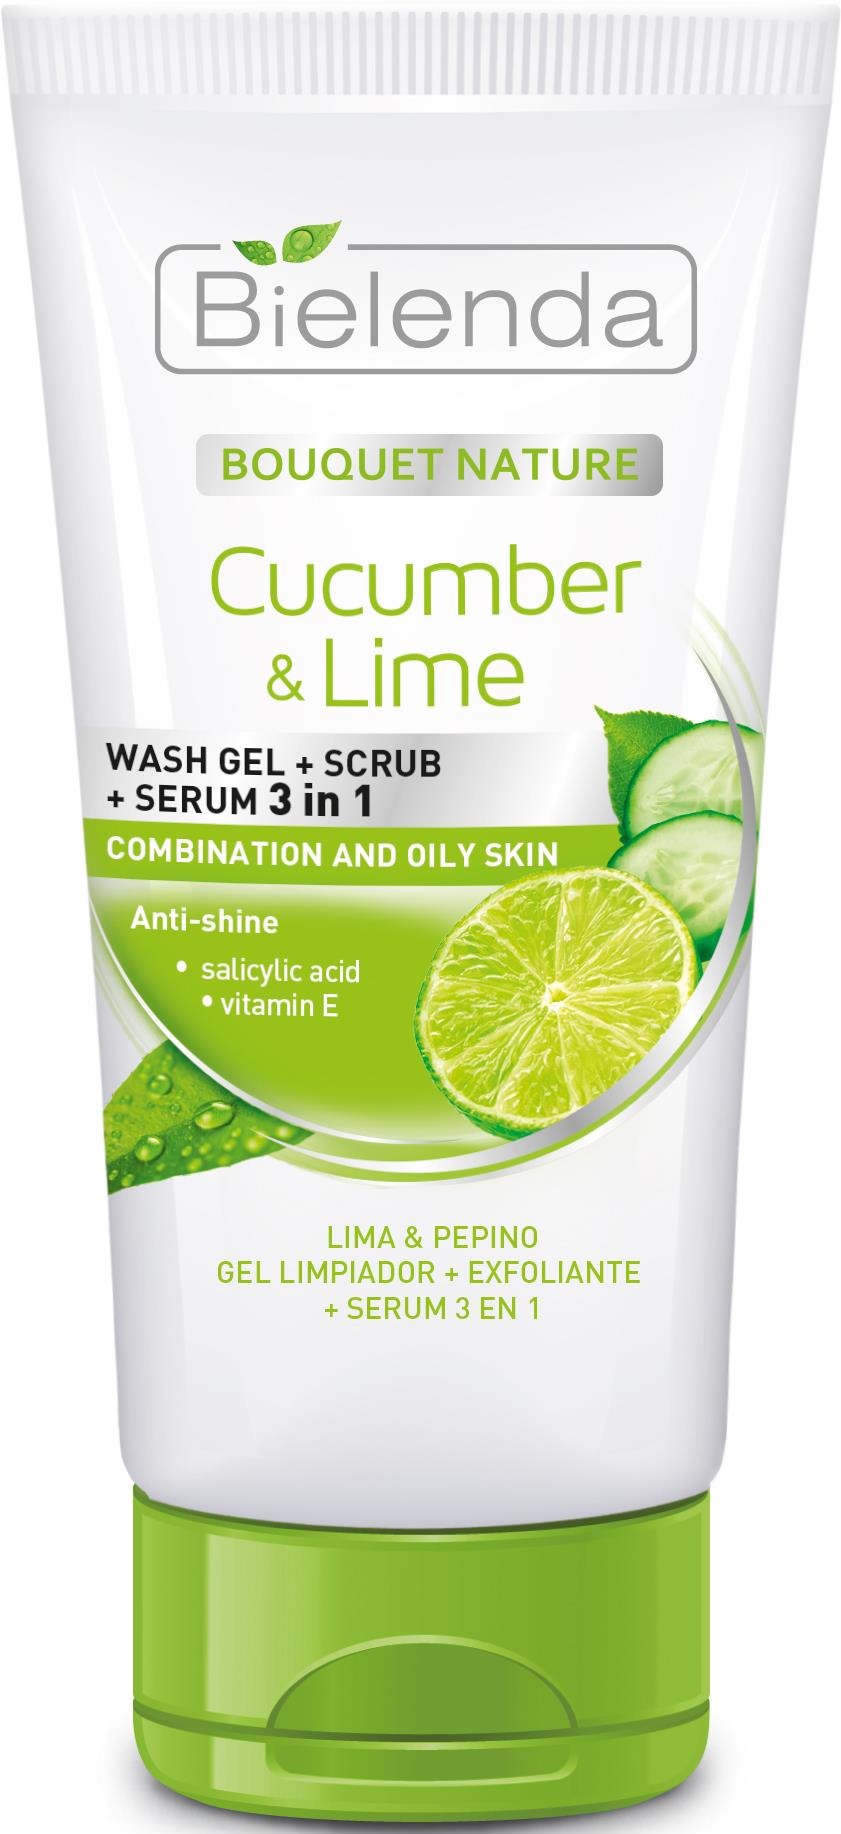 Bielenda Cucumber & Lime Wash Gel + Scrub + Serum 3 In 1